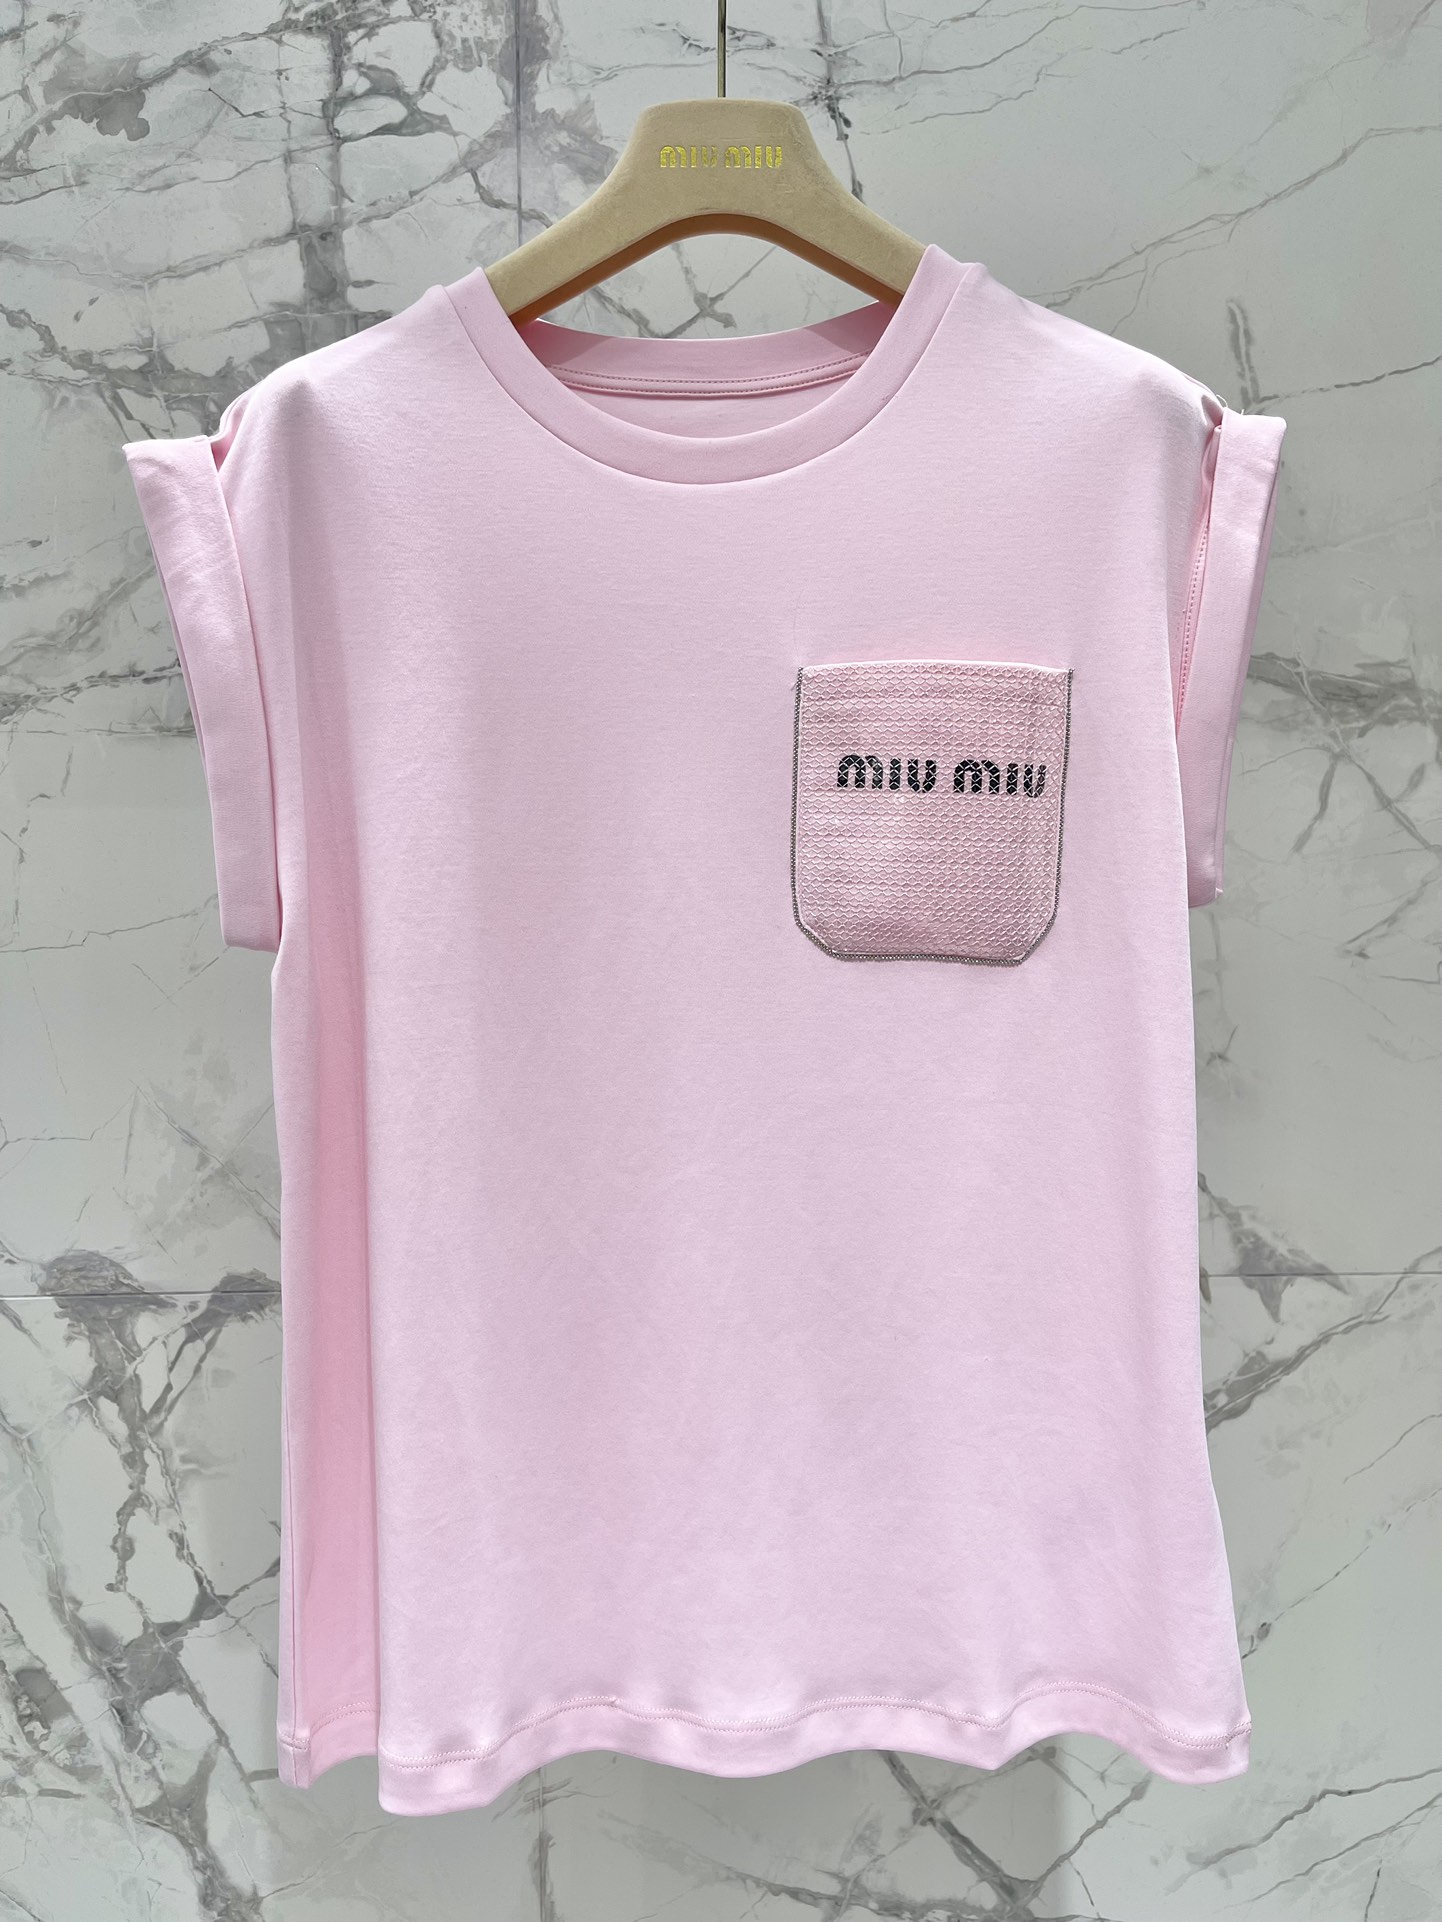 ミュウミュウスカーフスーパーコピー 柔らかい 無袖 Tシャツ トップス ファッション カジュアル 人気 シンプル ピンク_1